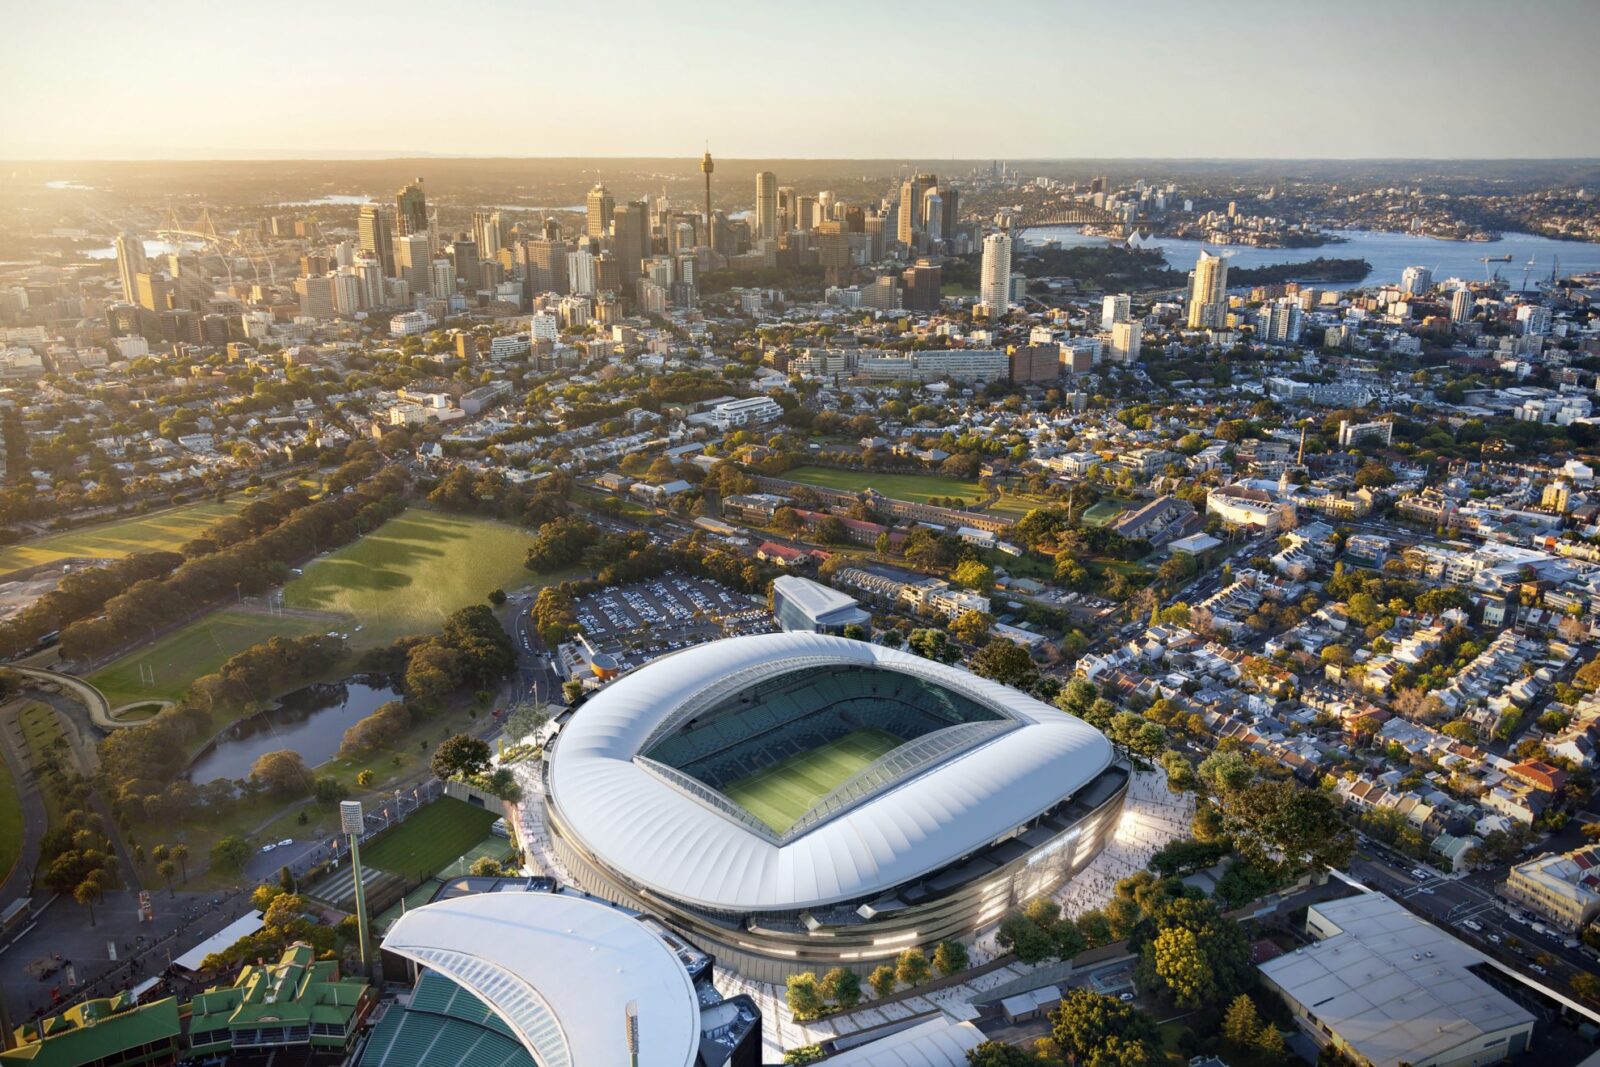 Sydney Football Stadium visto do alto, em Sydney, Austrália. Foto: Divulgação Cox Architecture